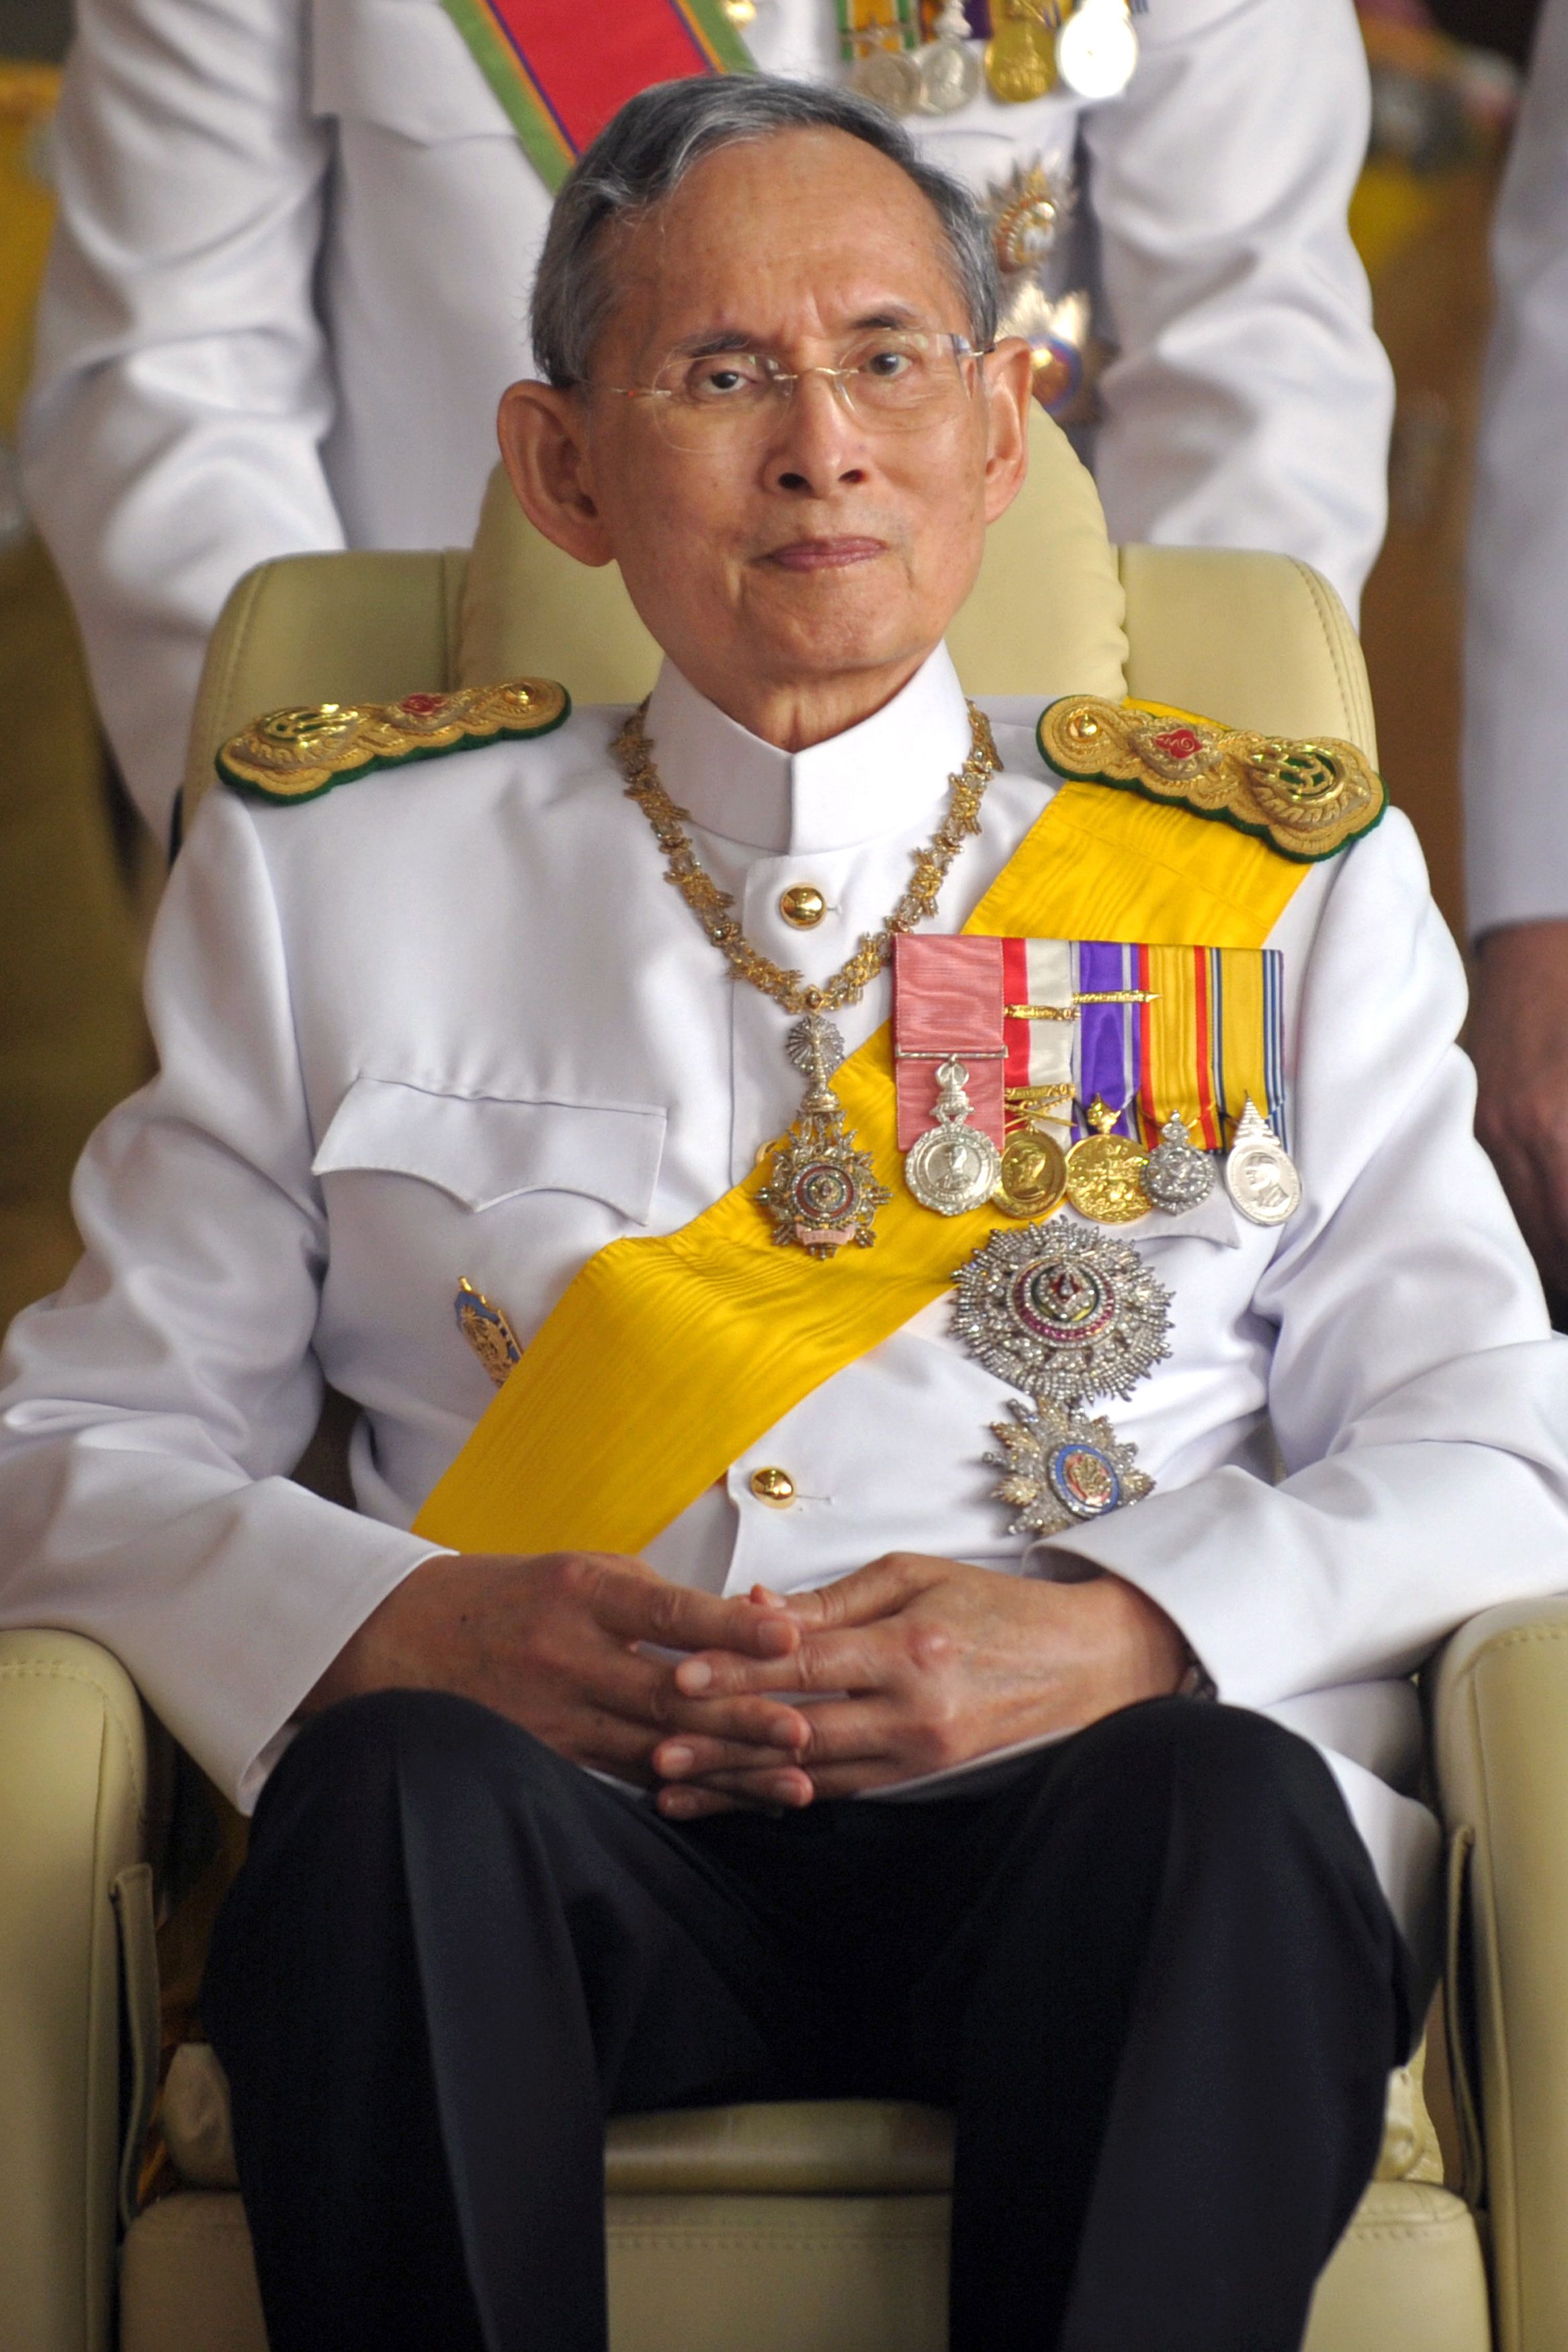 صورة في 2010 بعد الاحتفال الملكي بمناسبة عيد ميلاده الـ 83